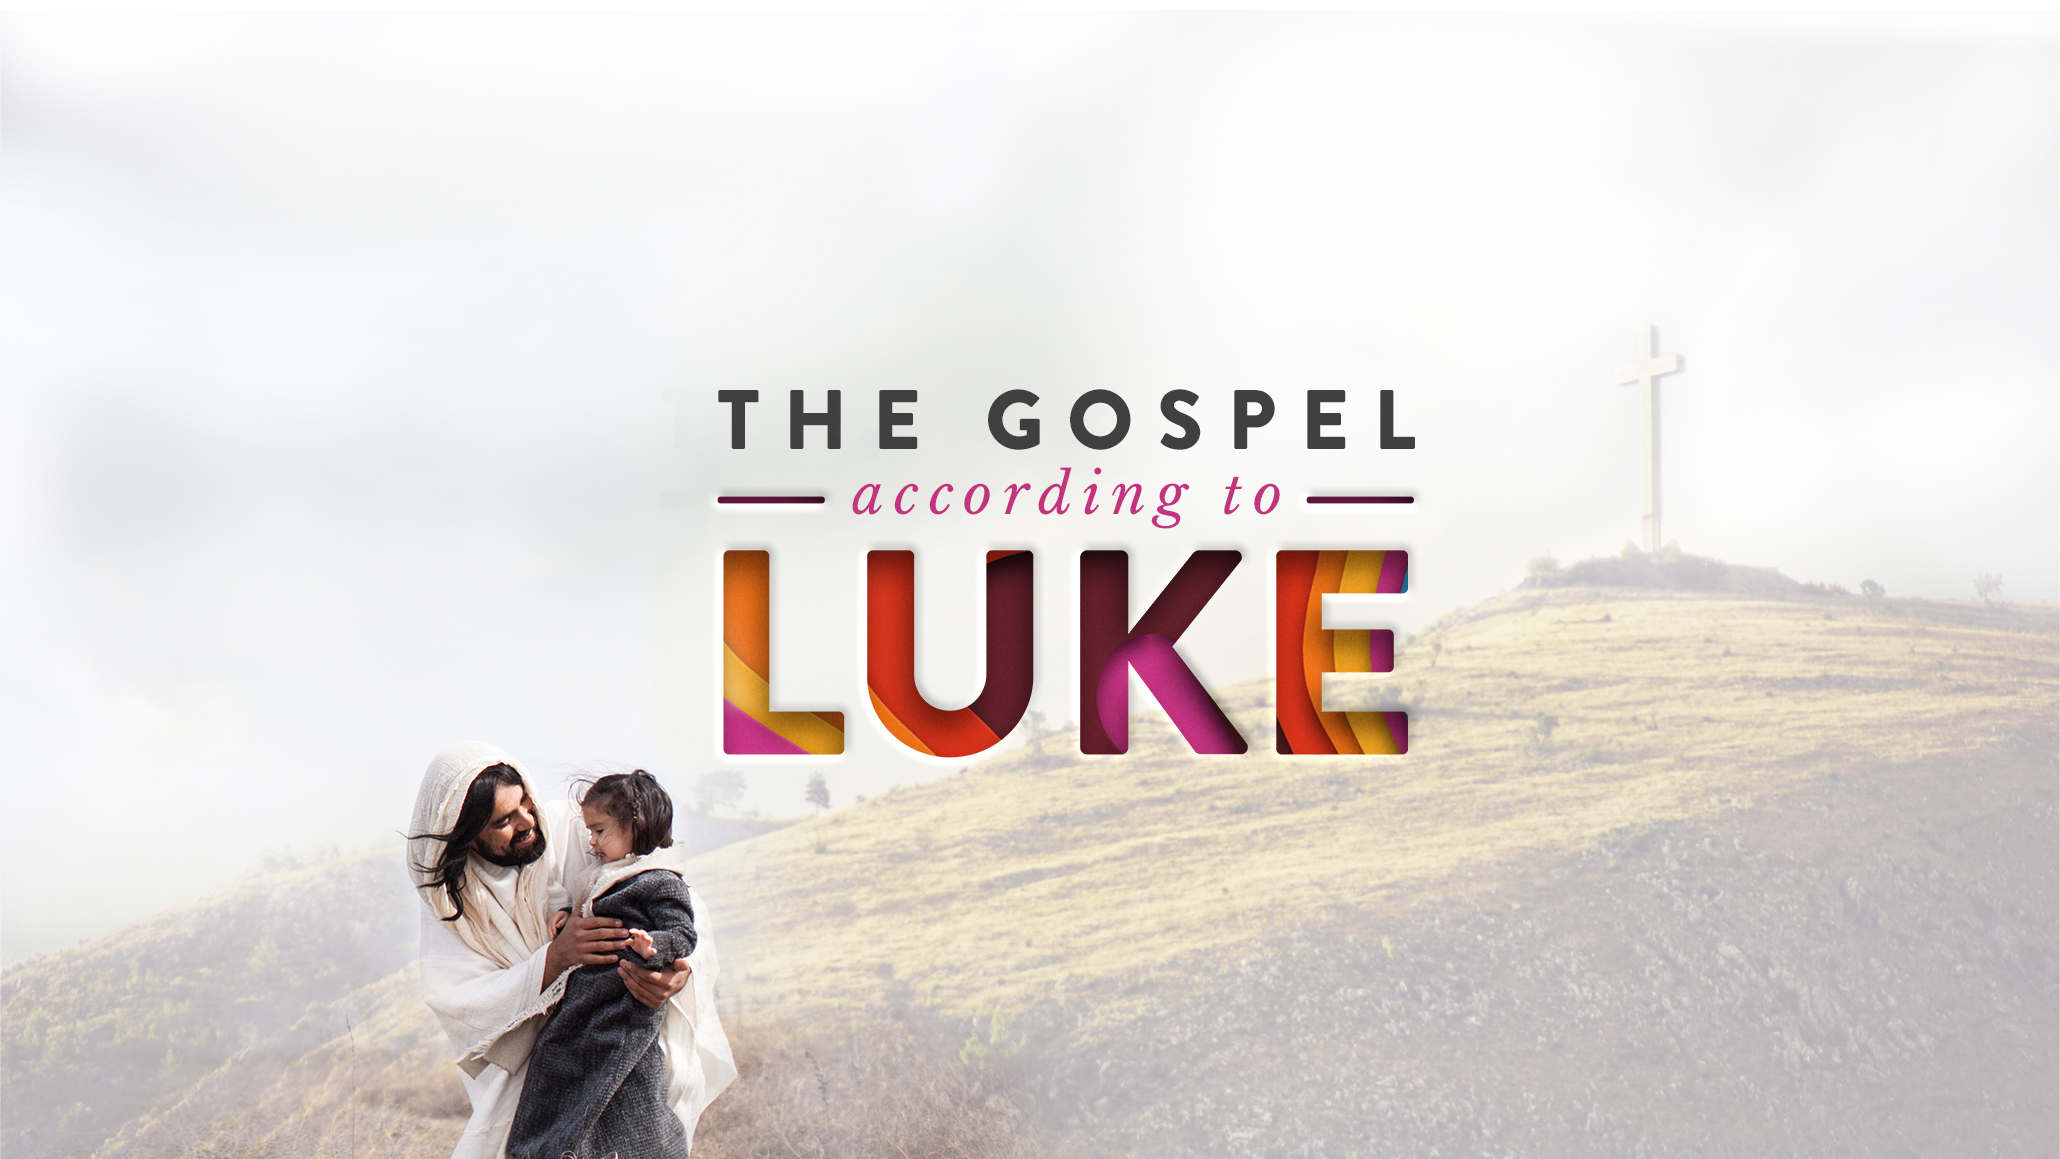 Luke 18:18-30; 19:1-10